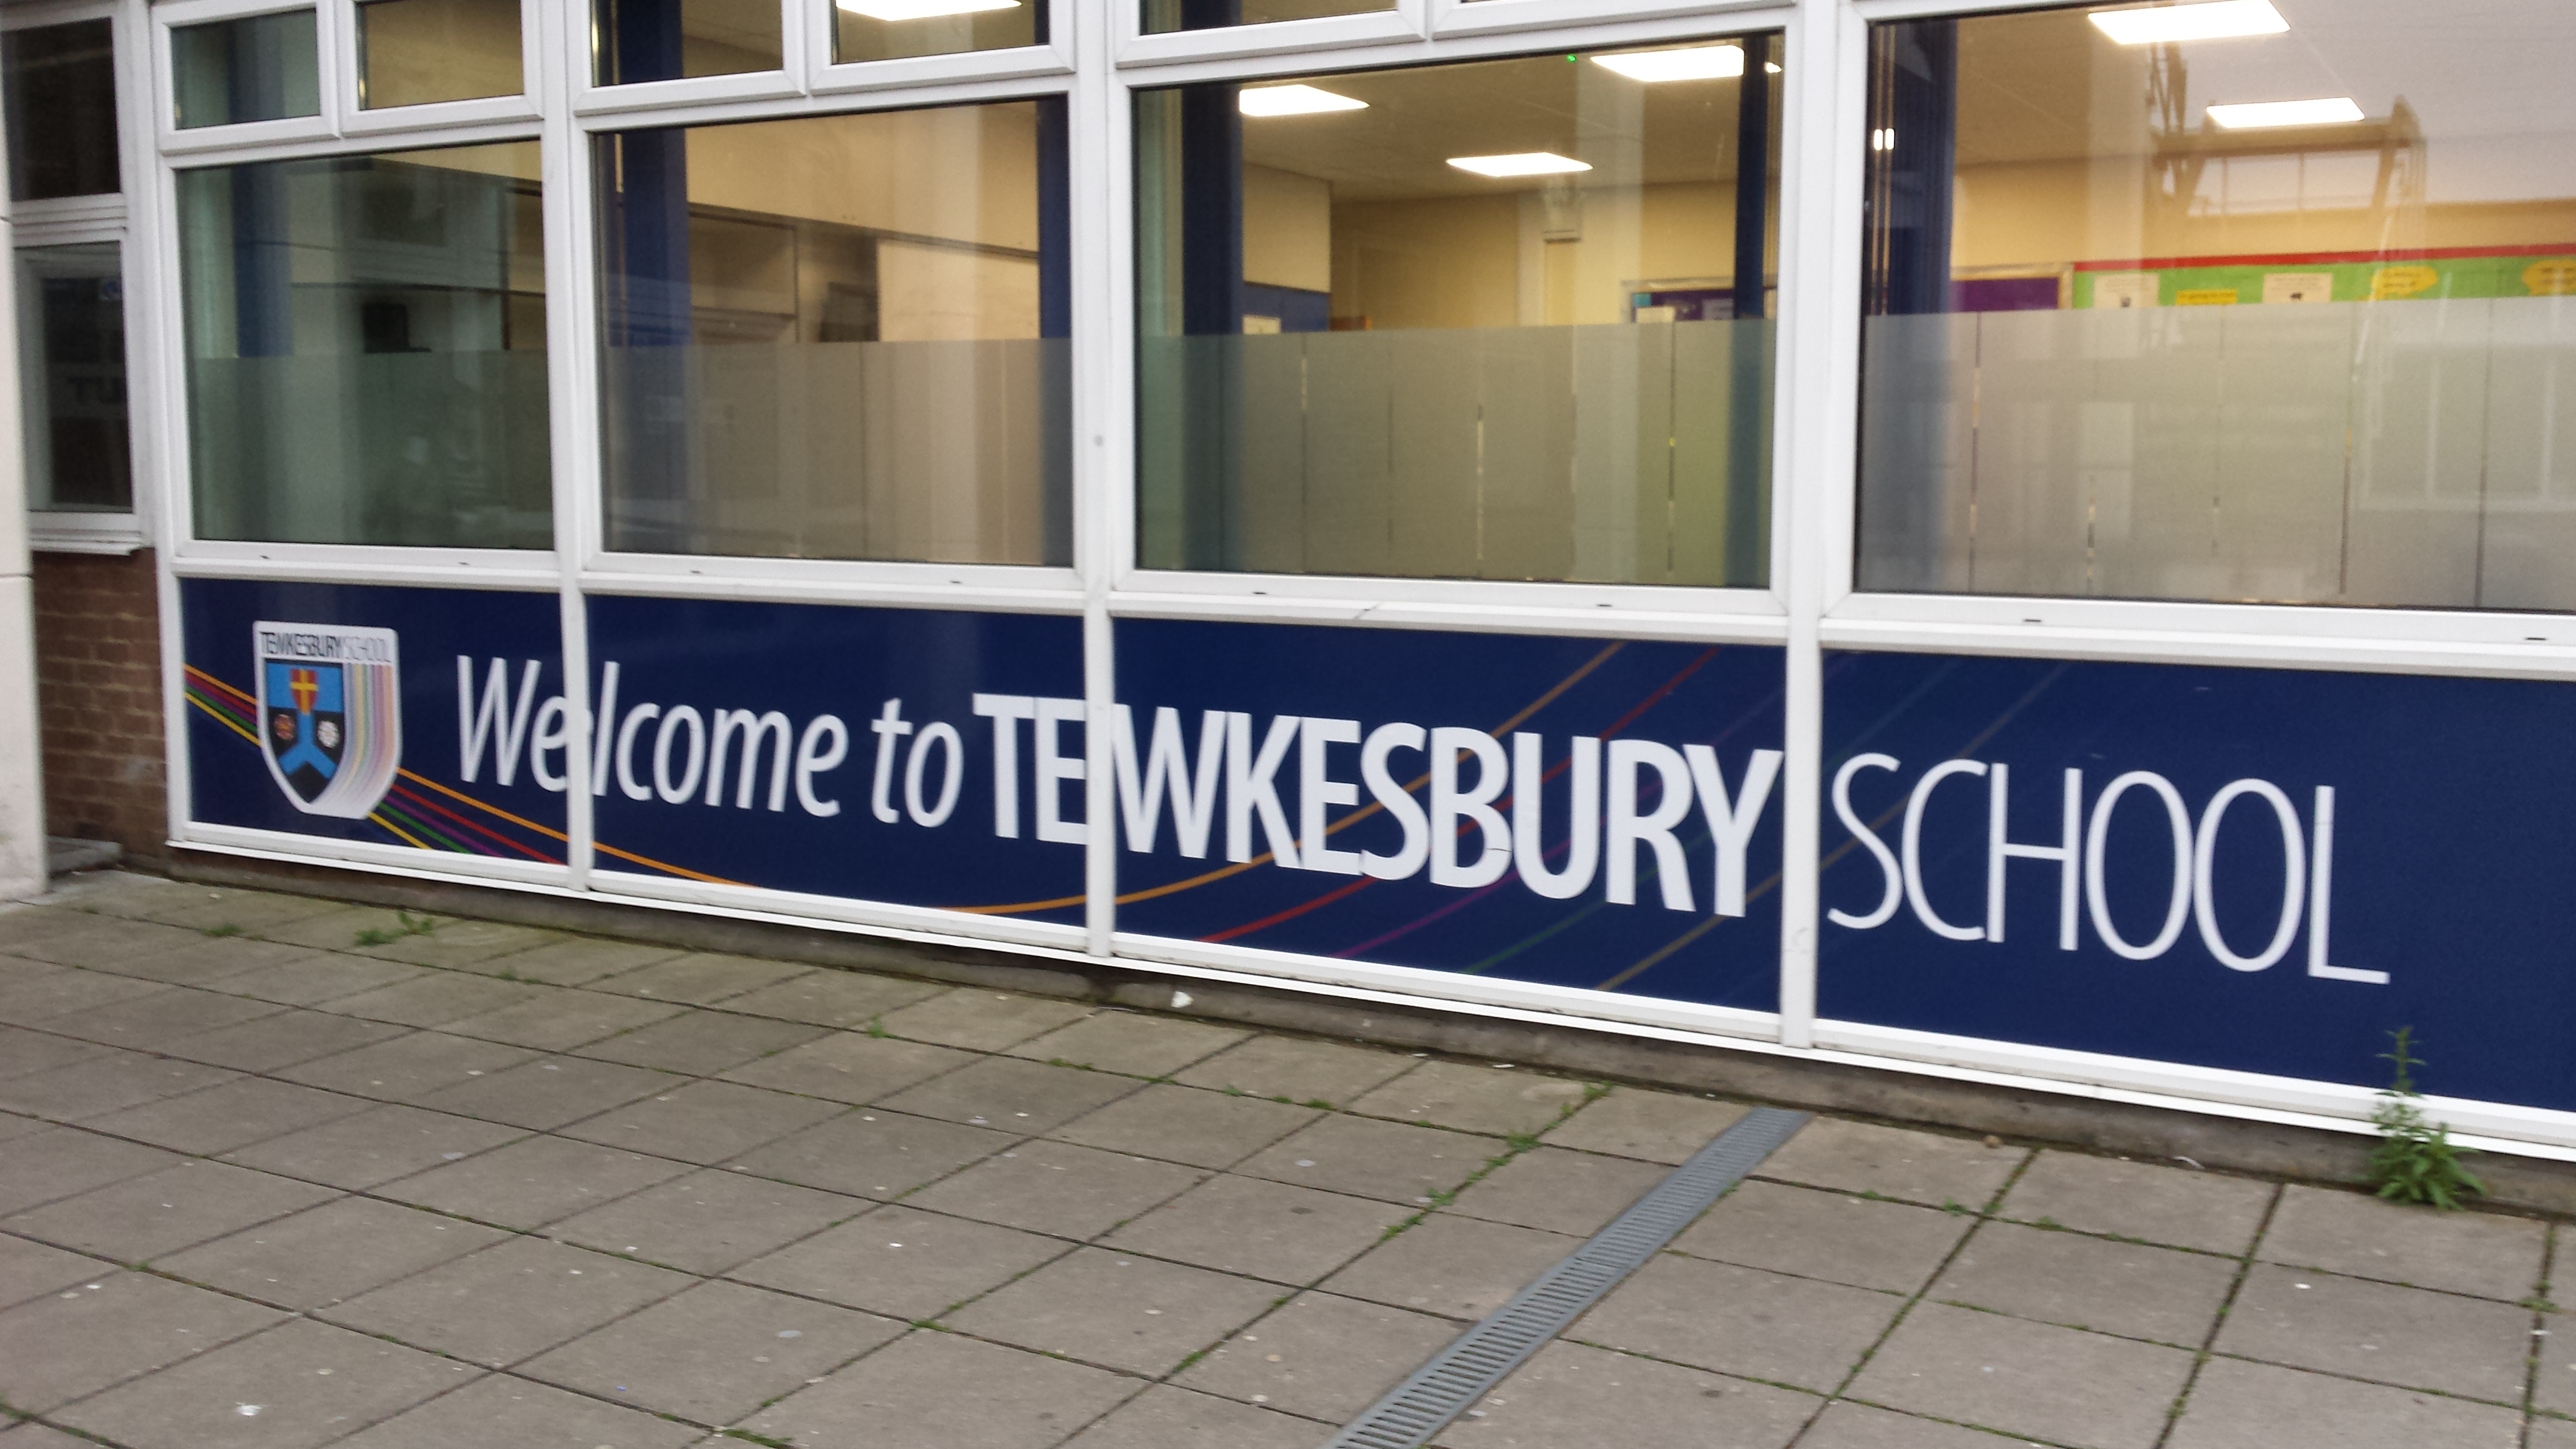 Thank you Tewkesbury School